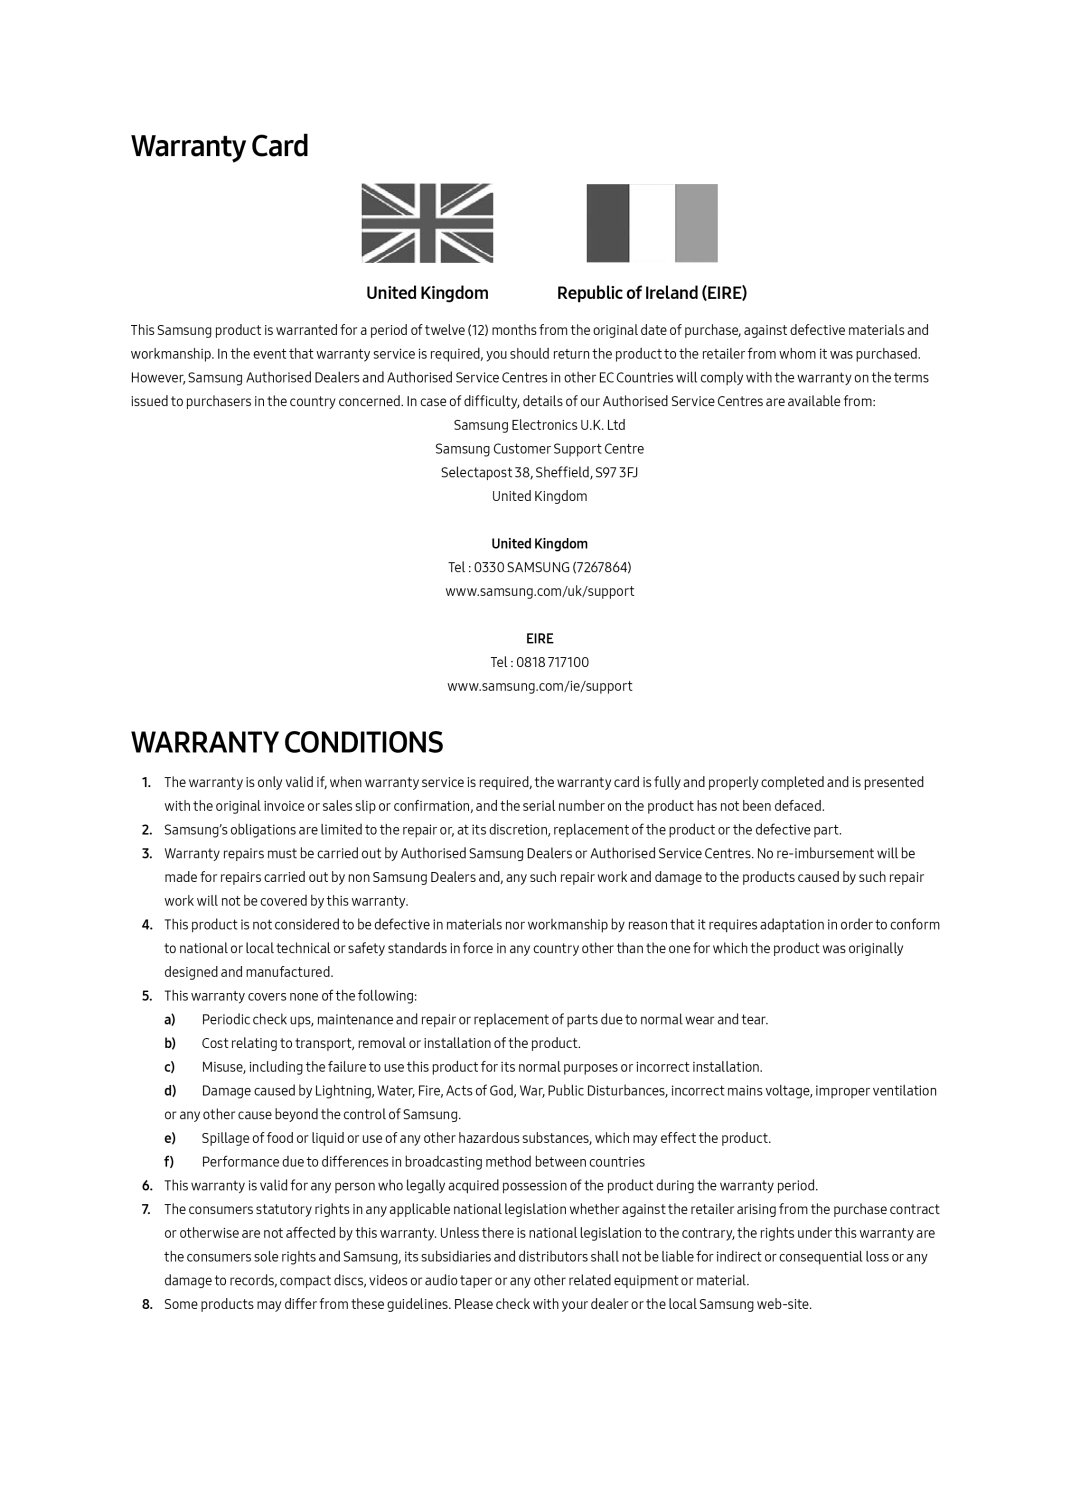 Samsung UE49MU8000TXZG, UE65MU8000TXZG Warranty Card, Warranty Conditions, Republic of Ireland EIRE, United Kingdom, Eire 